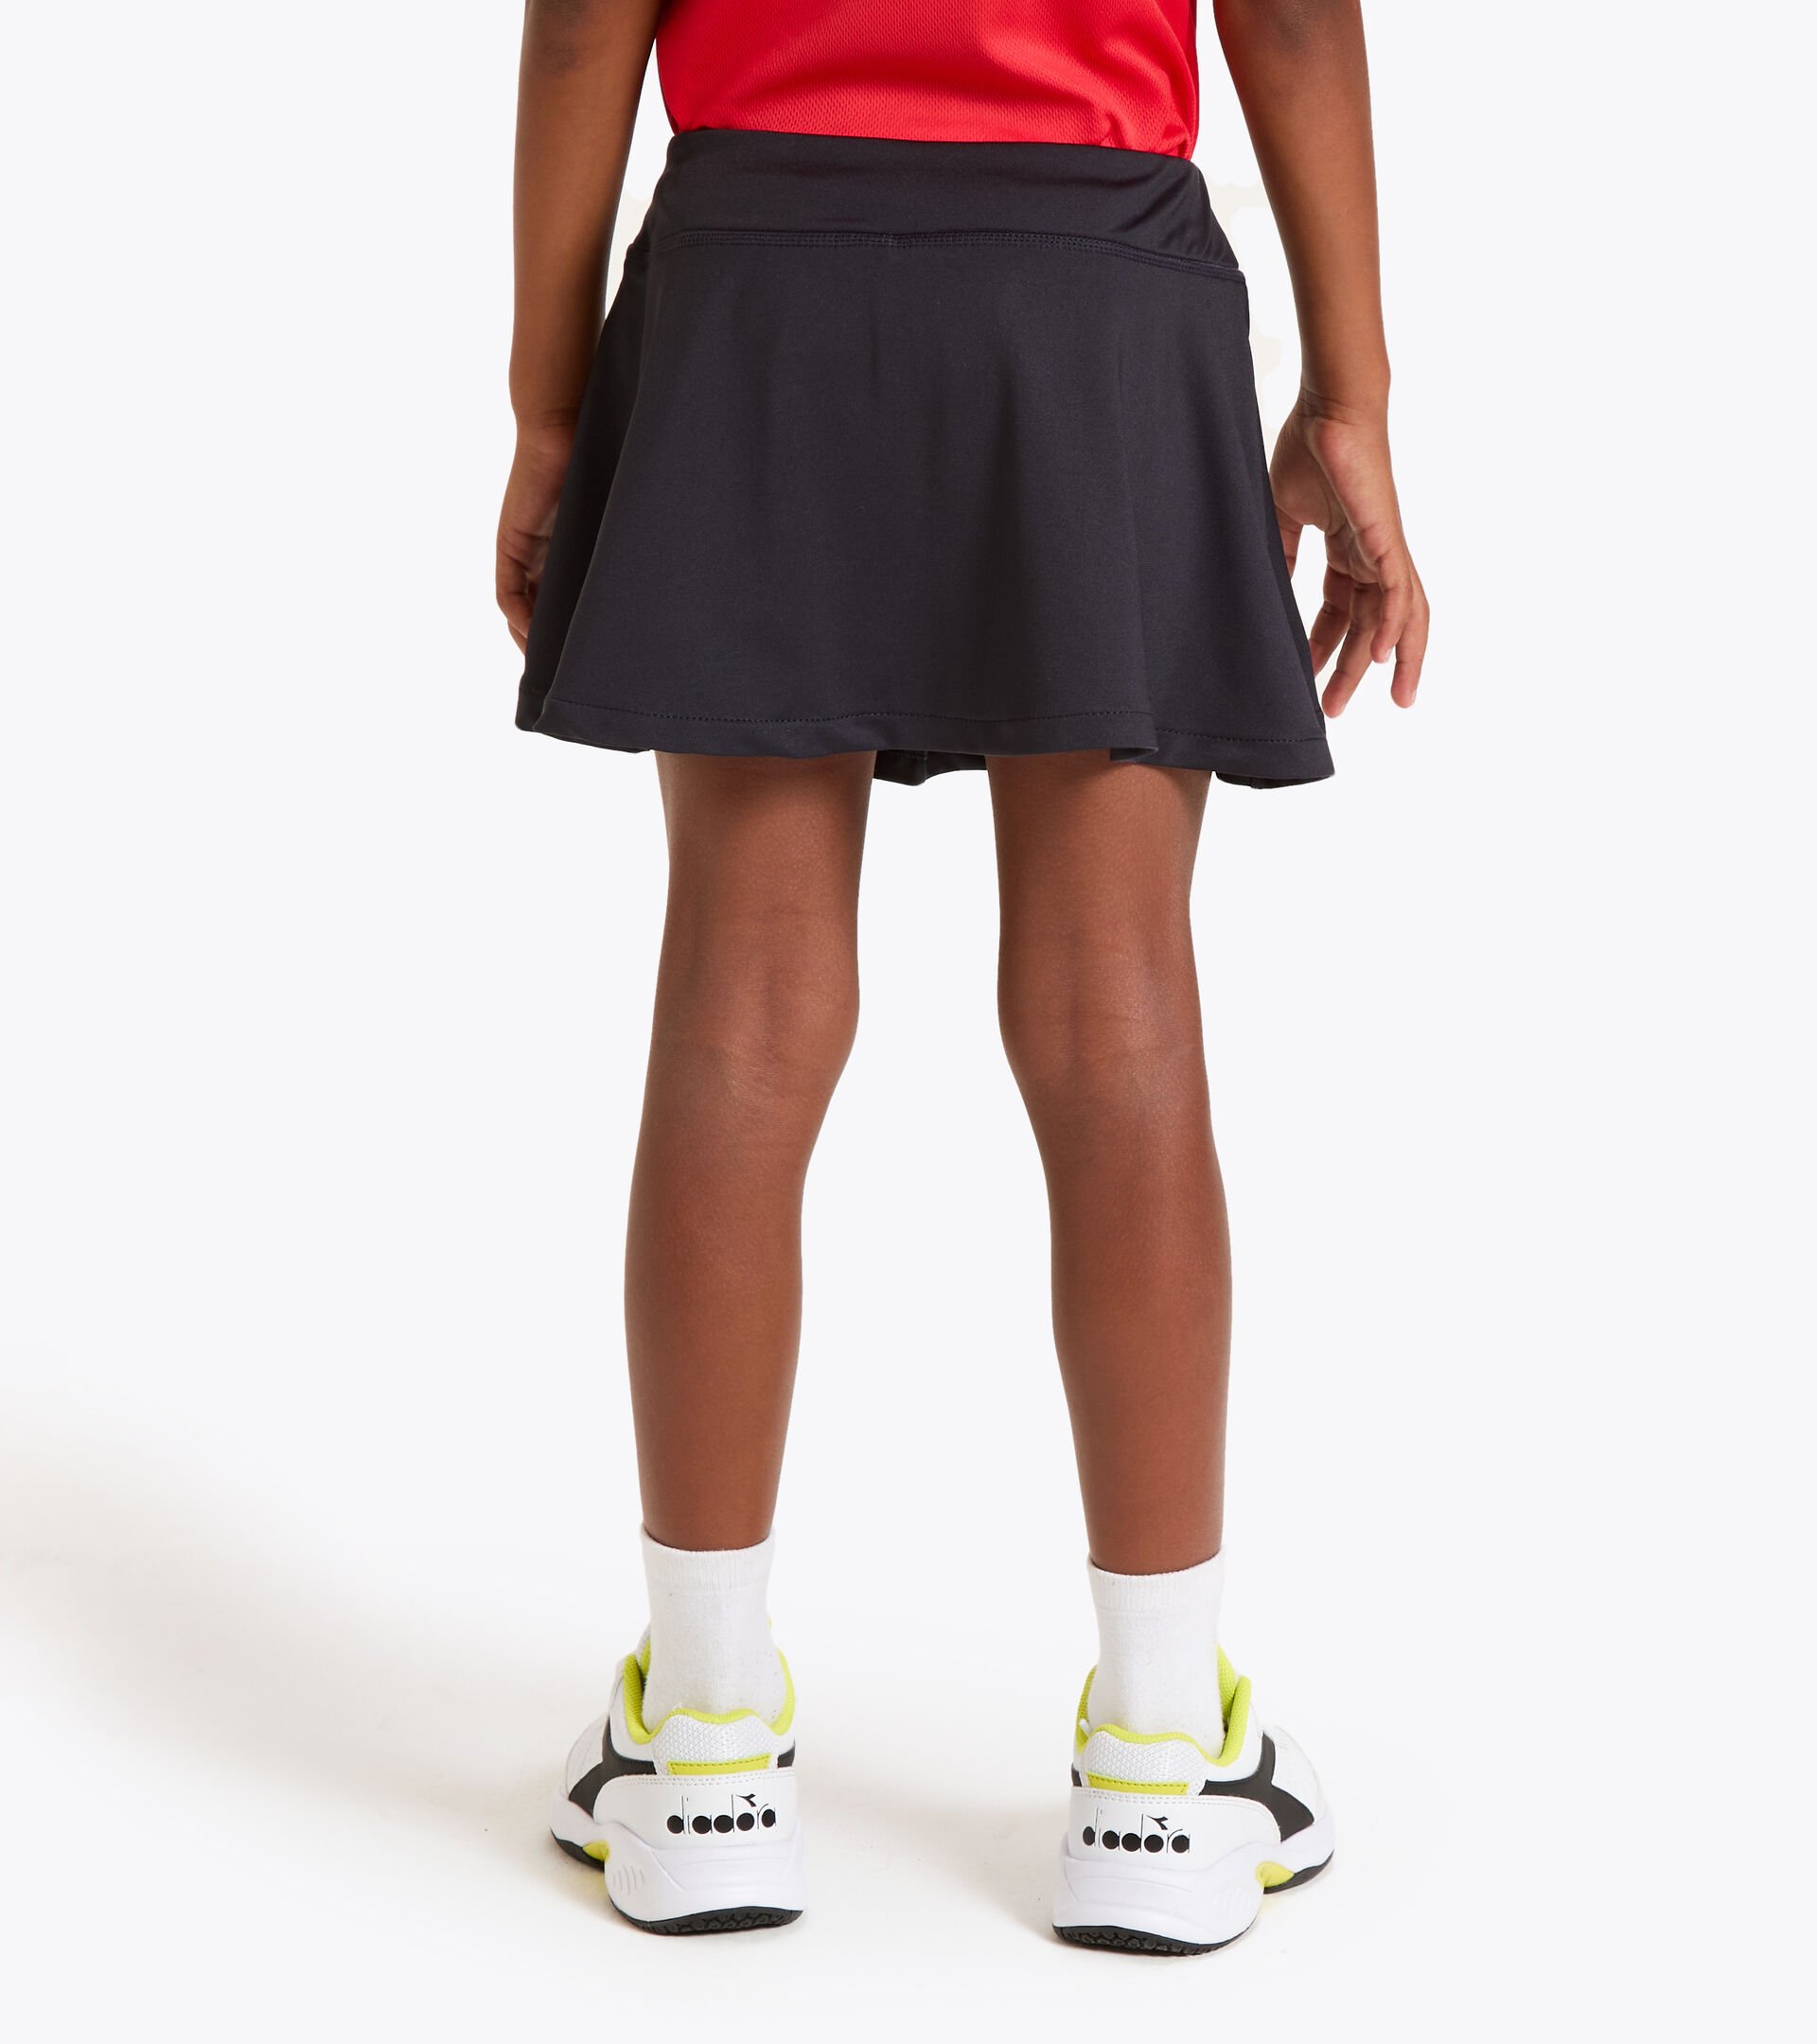 Tennis skirt - Junior G. SKIRT COURT DK SMOKE - Diadora